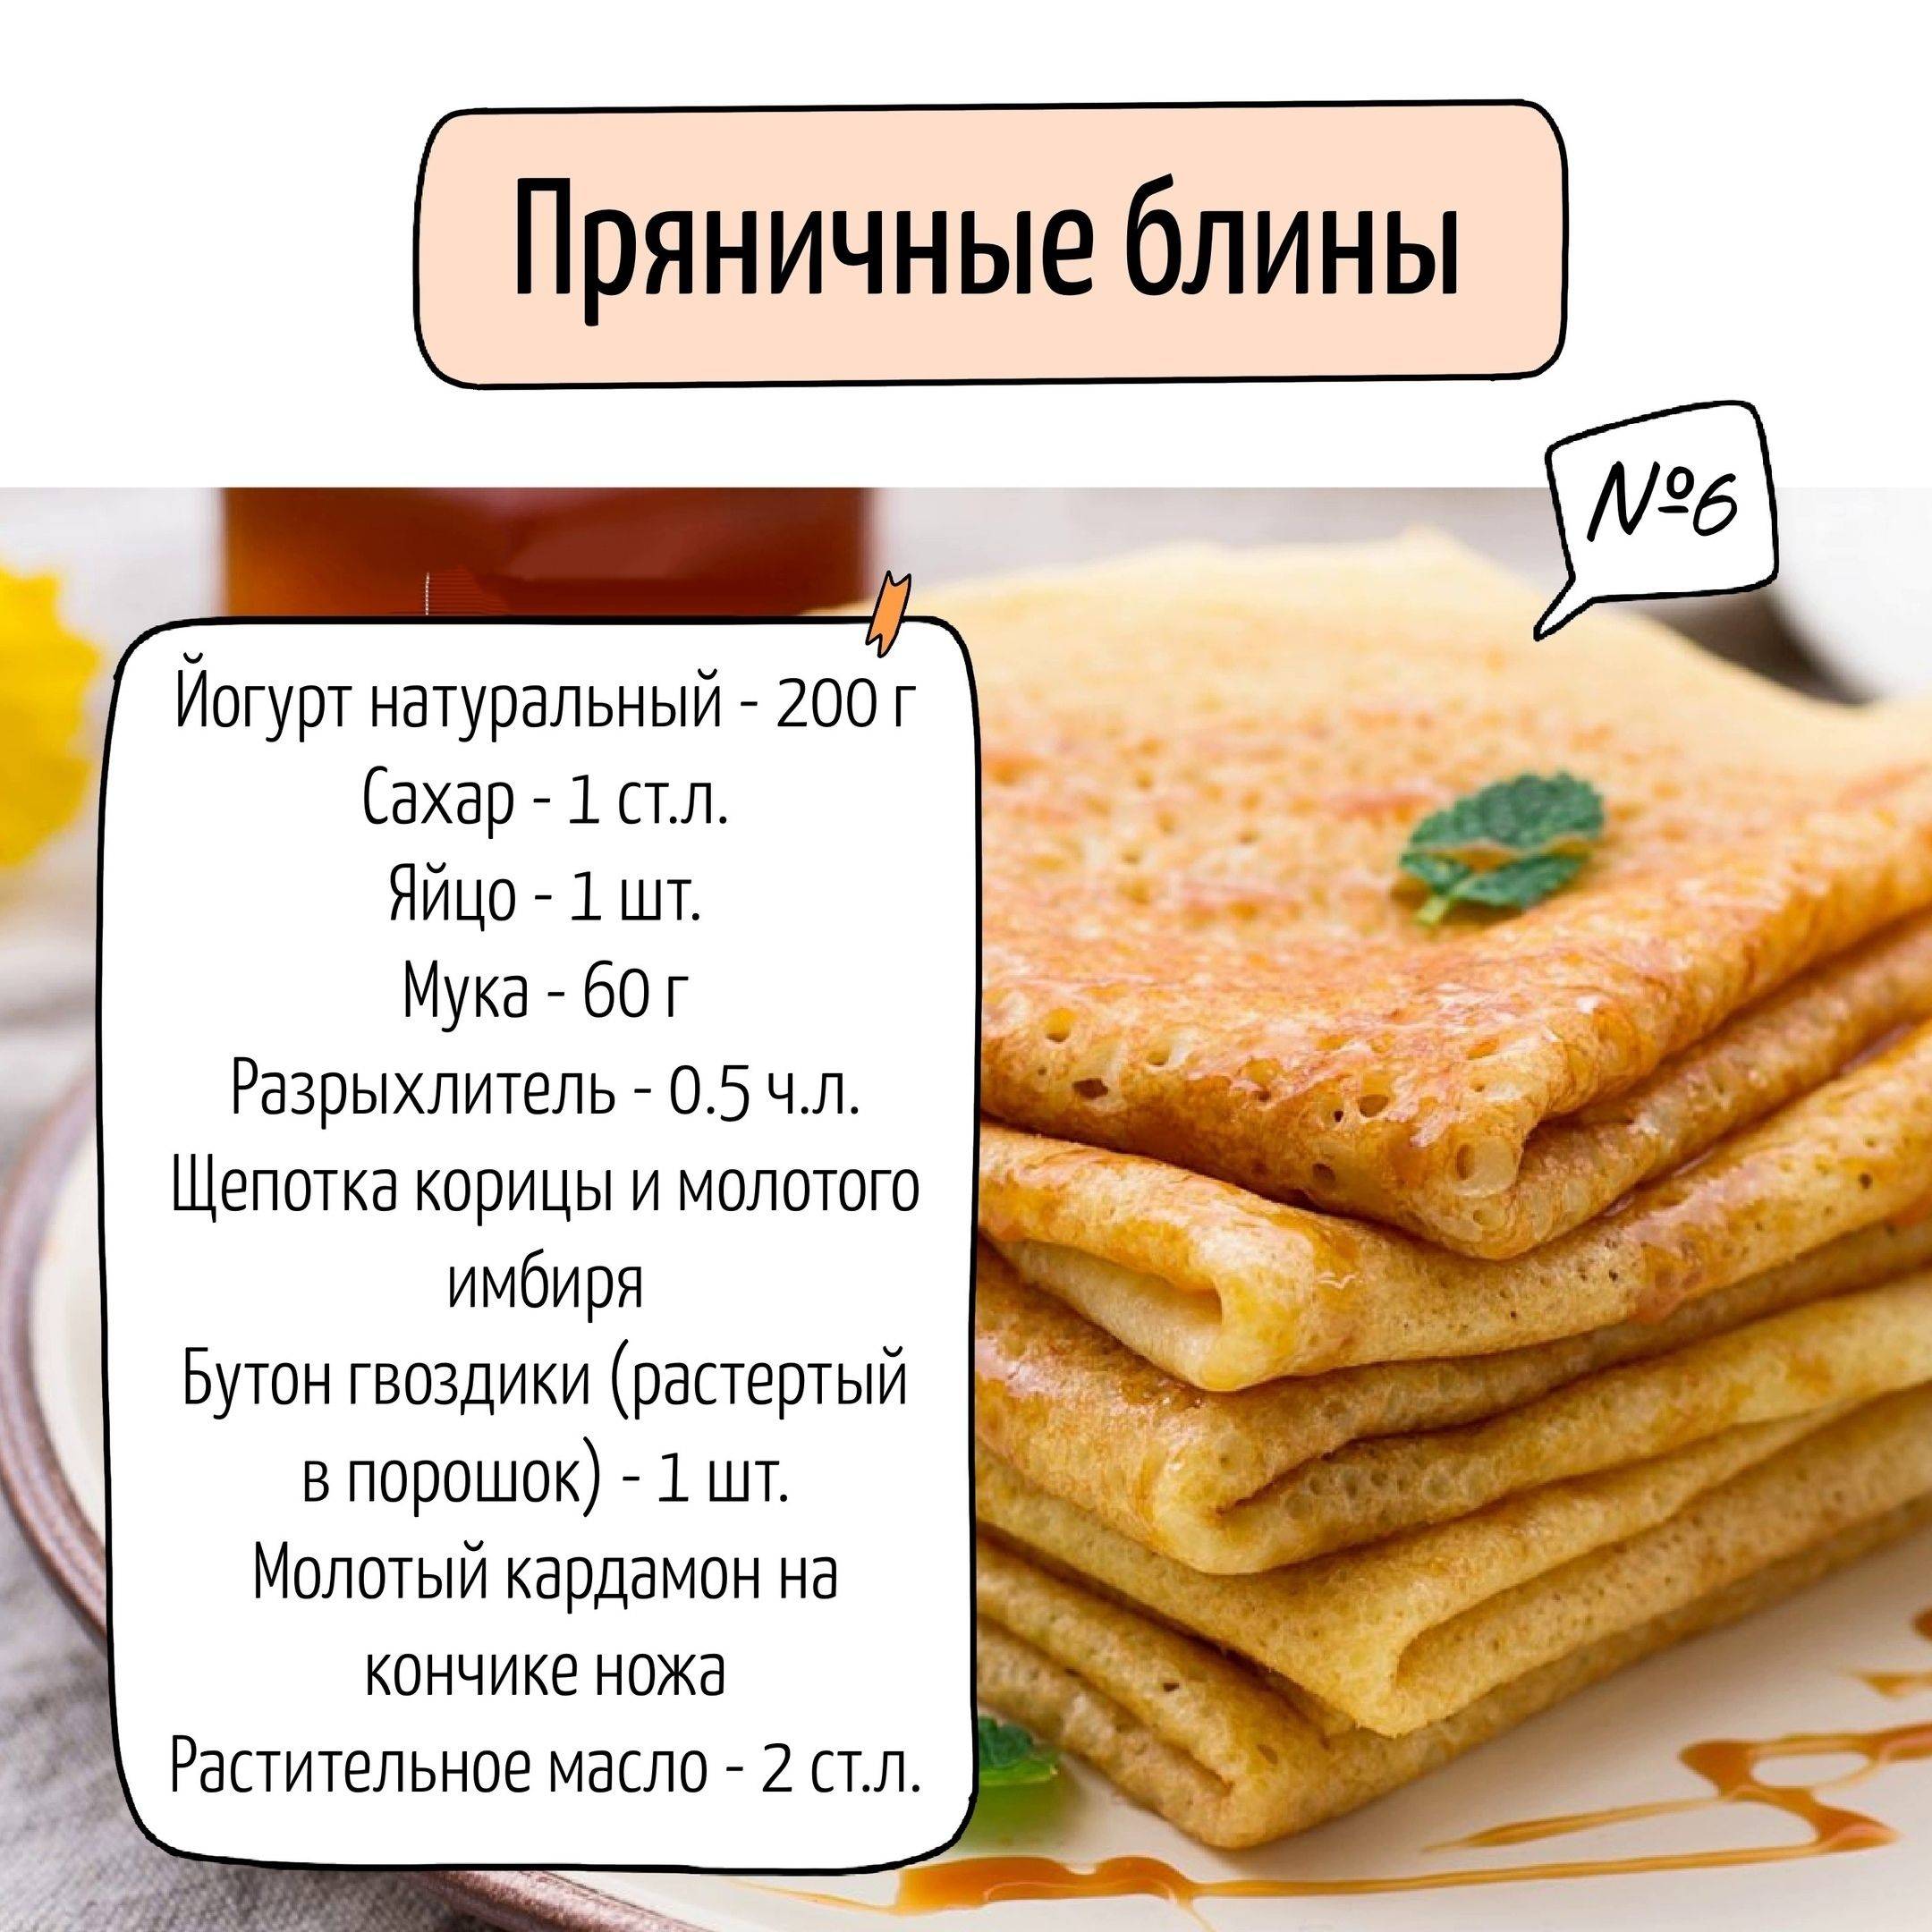 Блины на масленицу - самые вкусные и простые русские рецепты